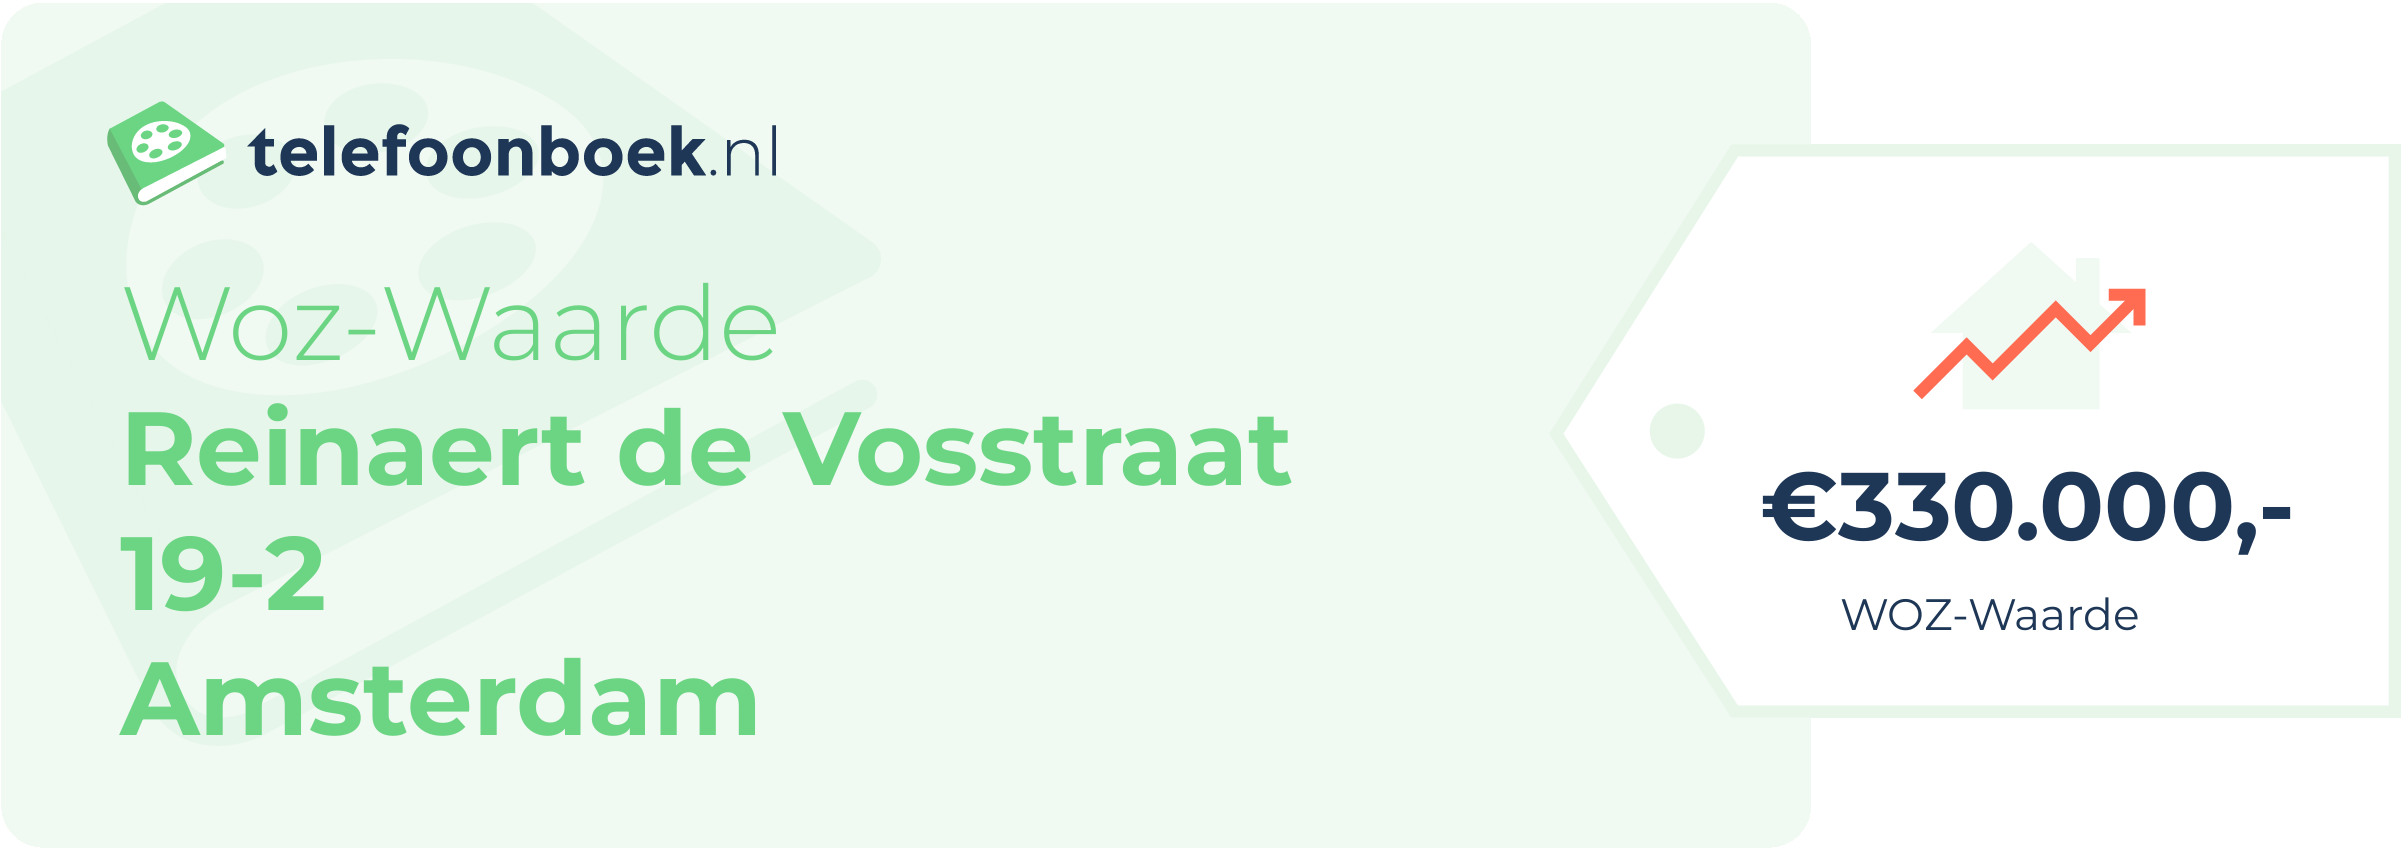 WOZ-waarde Reinaert De Vosstraat 19-2 Amsterdam